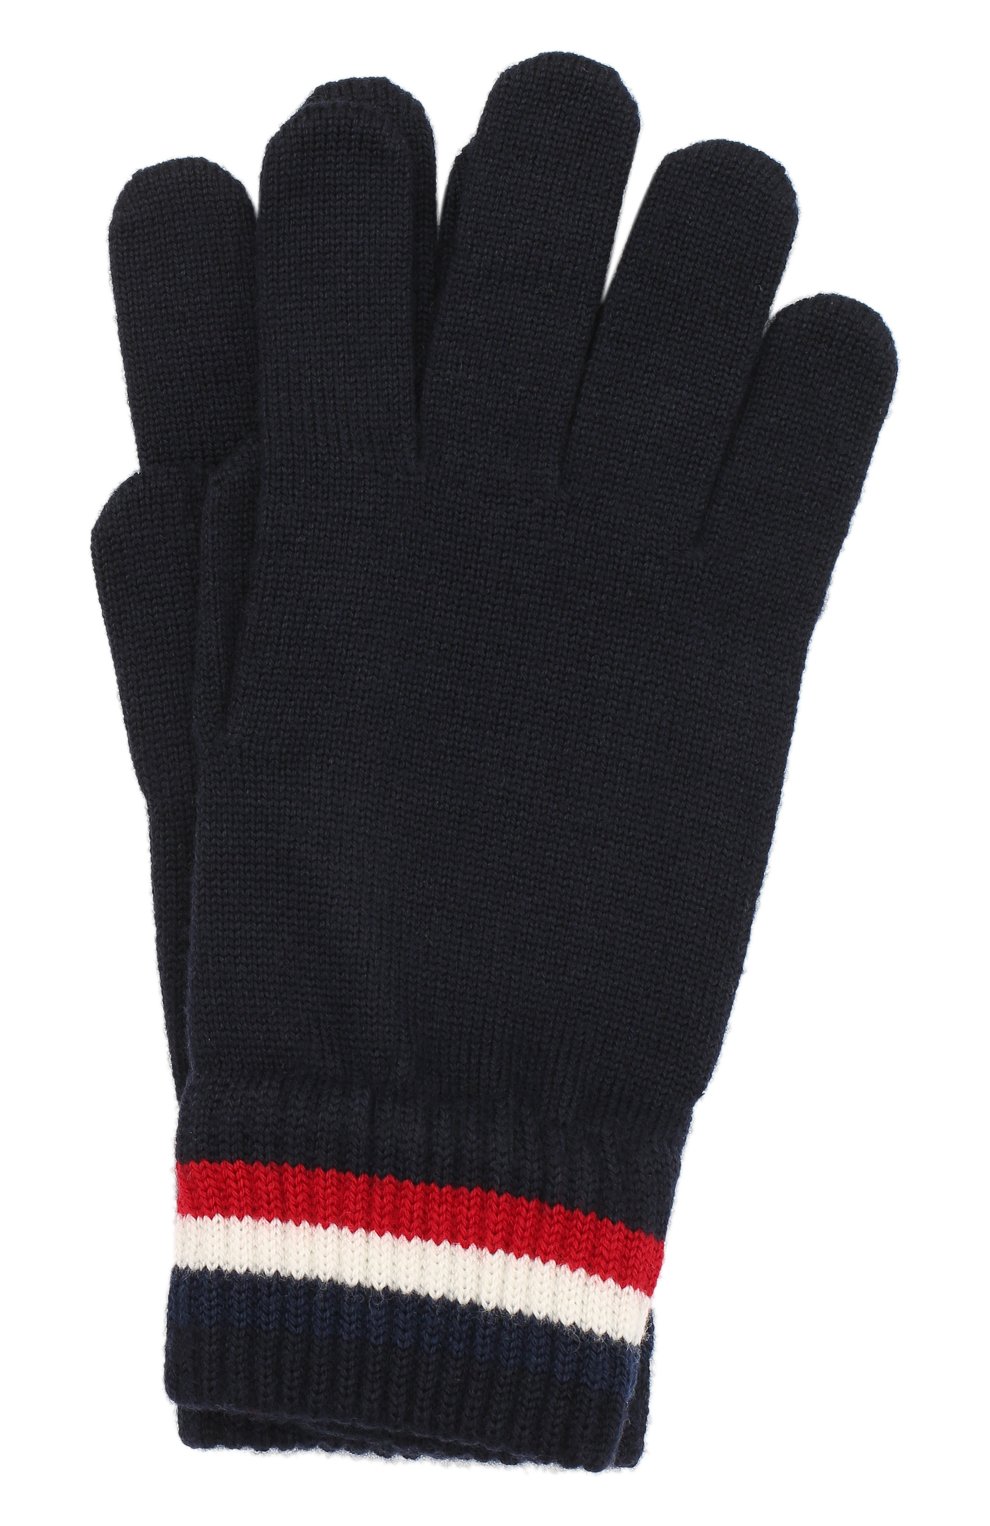 Мужские шерстяные перчатки MONCLER темно-синего цвета, арт. F2-091-3A701-00-A9575 | Фото 1 (Материал: Текстиль, Шерсть; Кросс-КТ: Трикотаж)